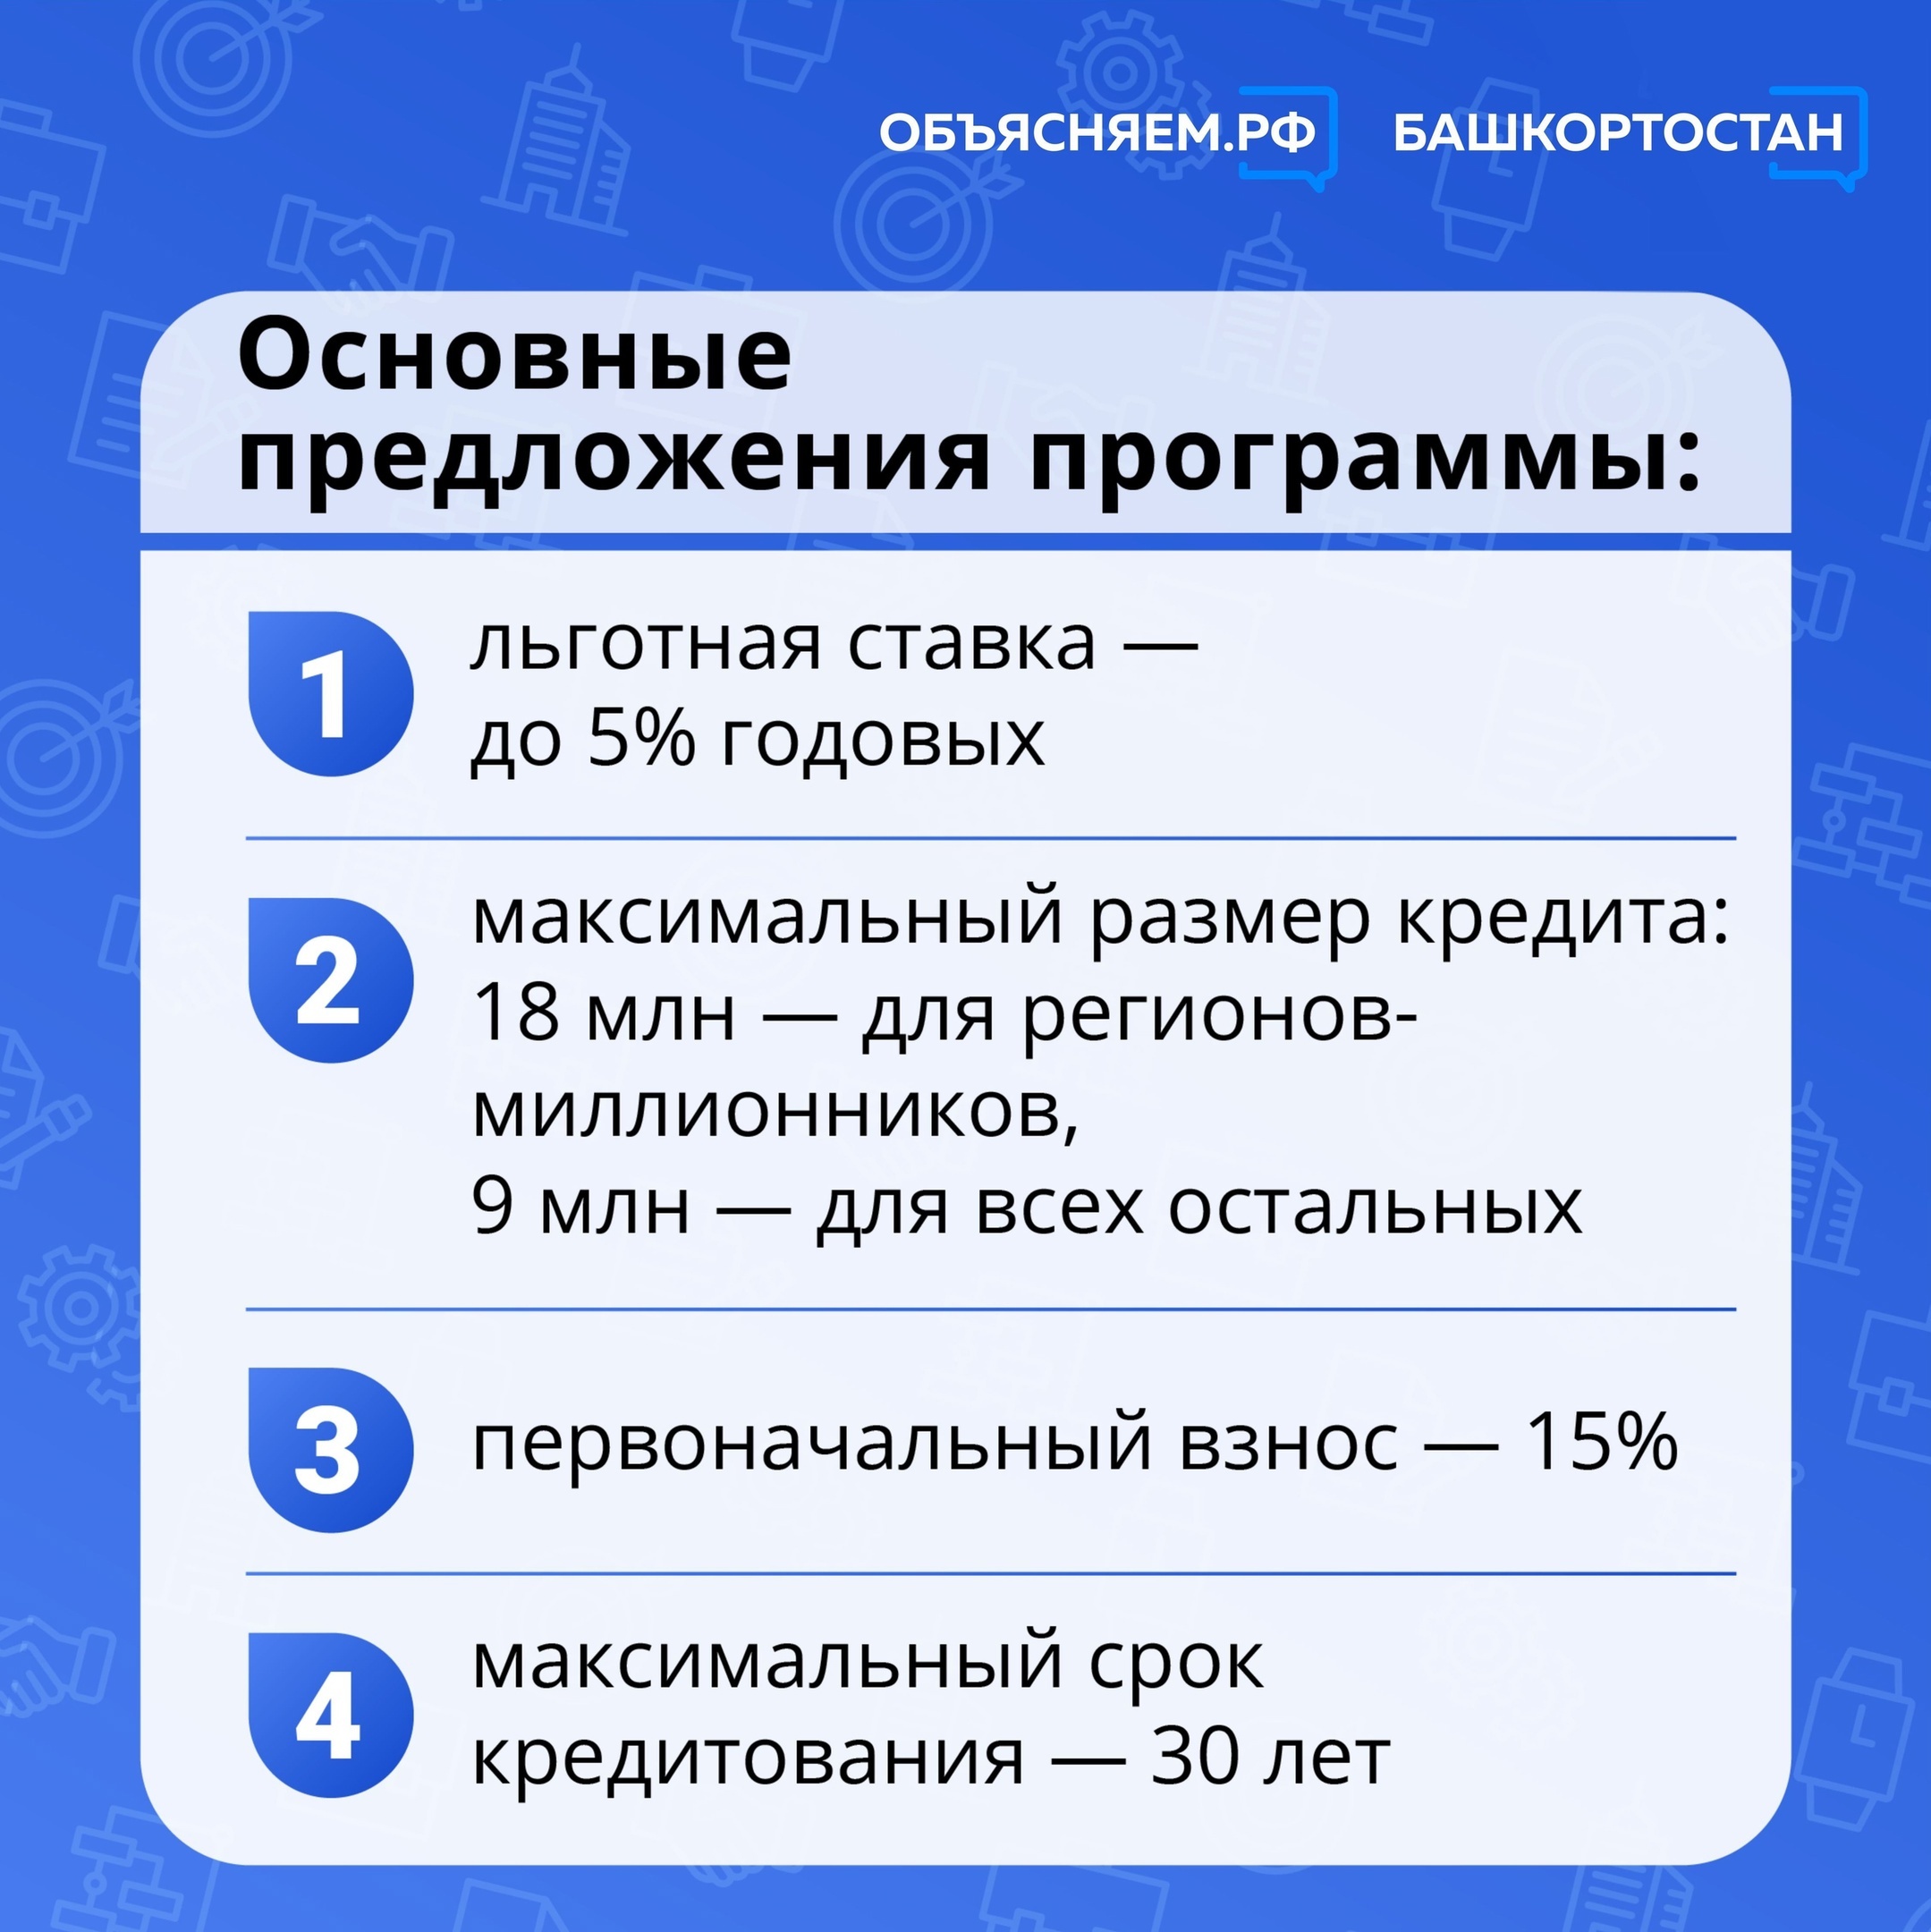 Отличные новости для работников сферы информационных технологий в Башкортостане